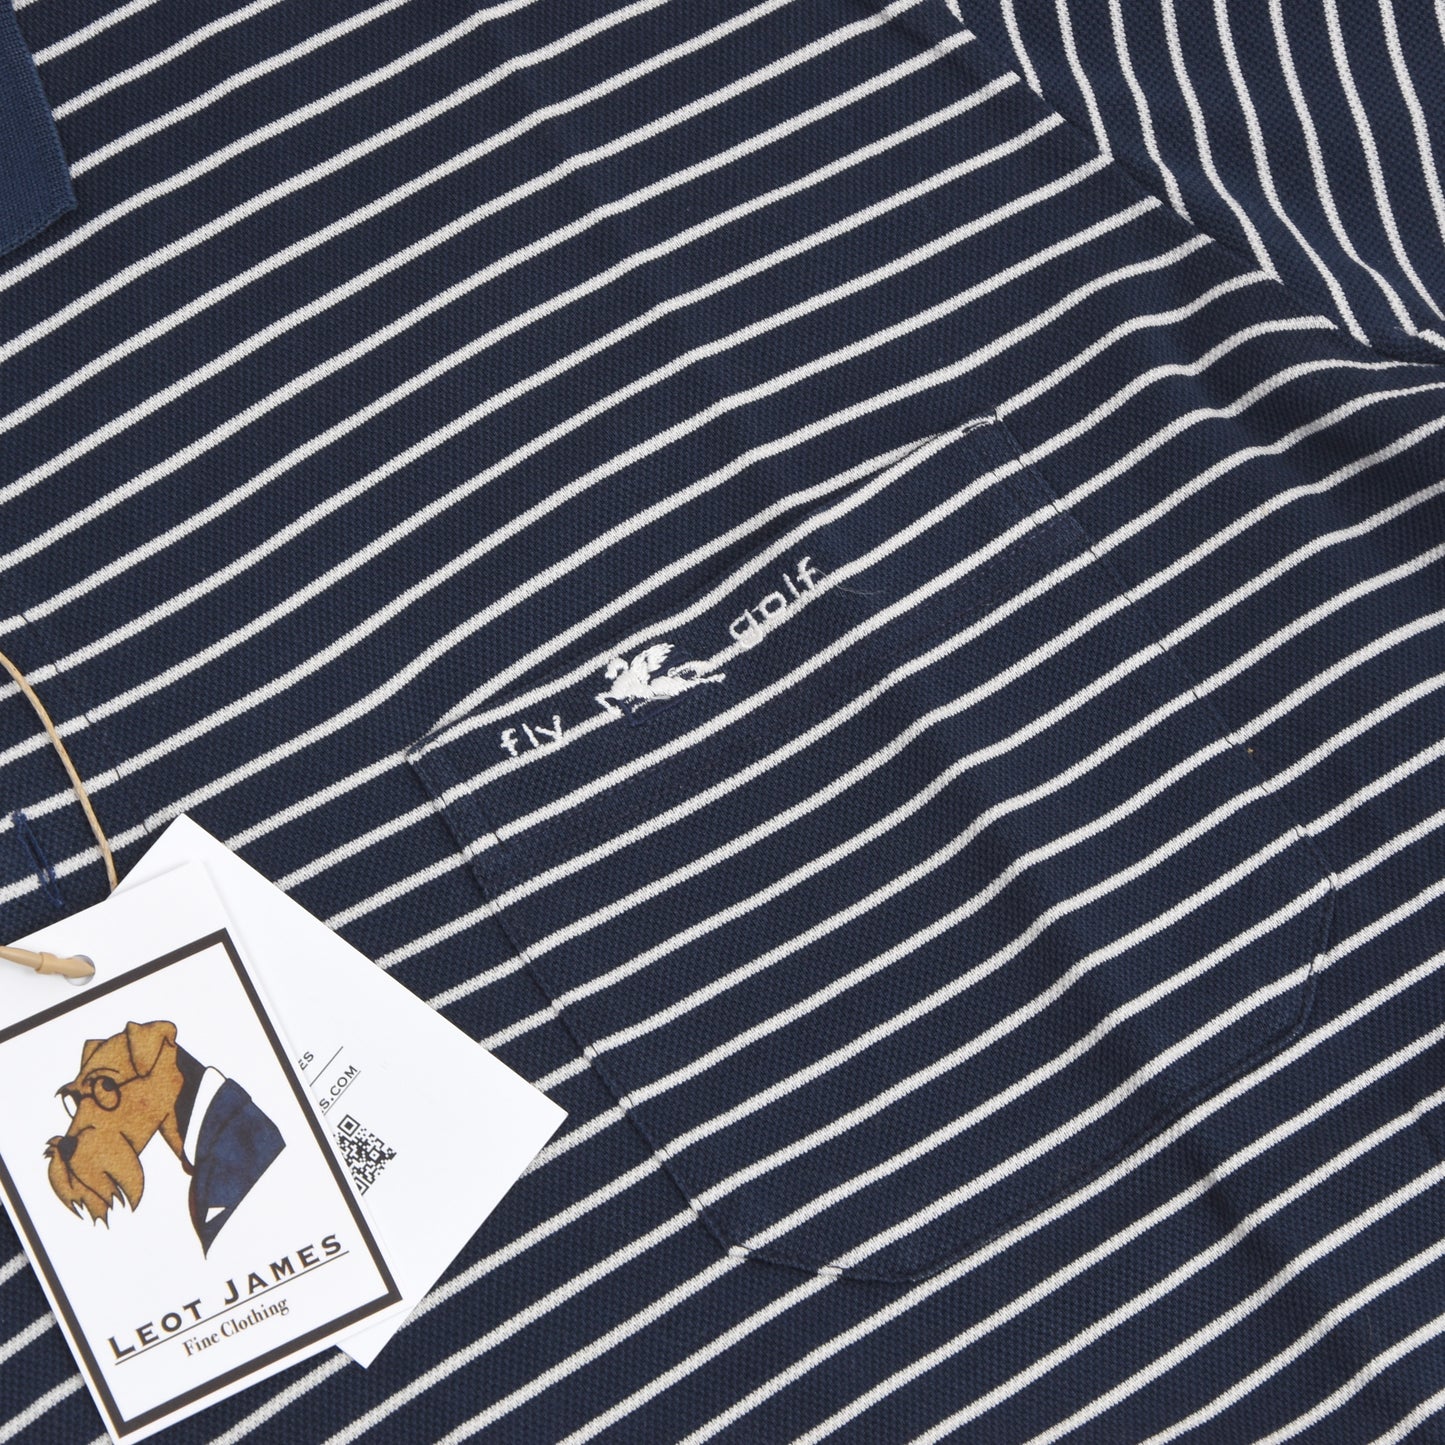 Etro Milano Golf Polo Shirt Size XL - Blue/White Stripes